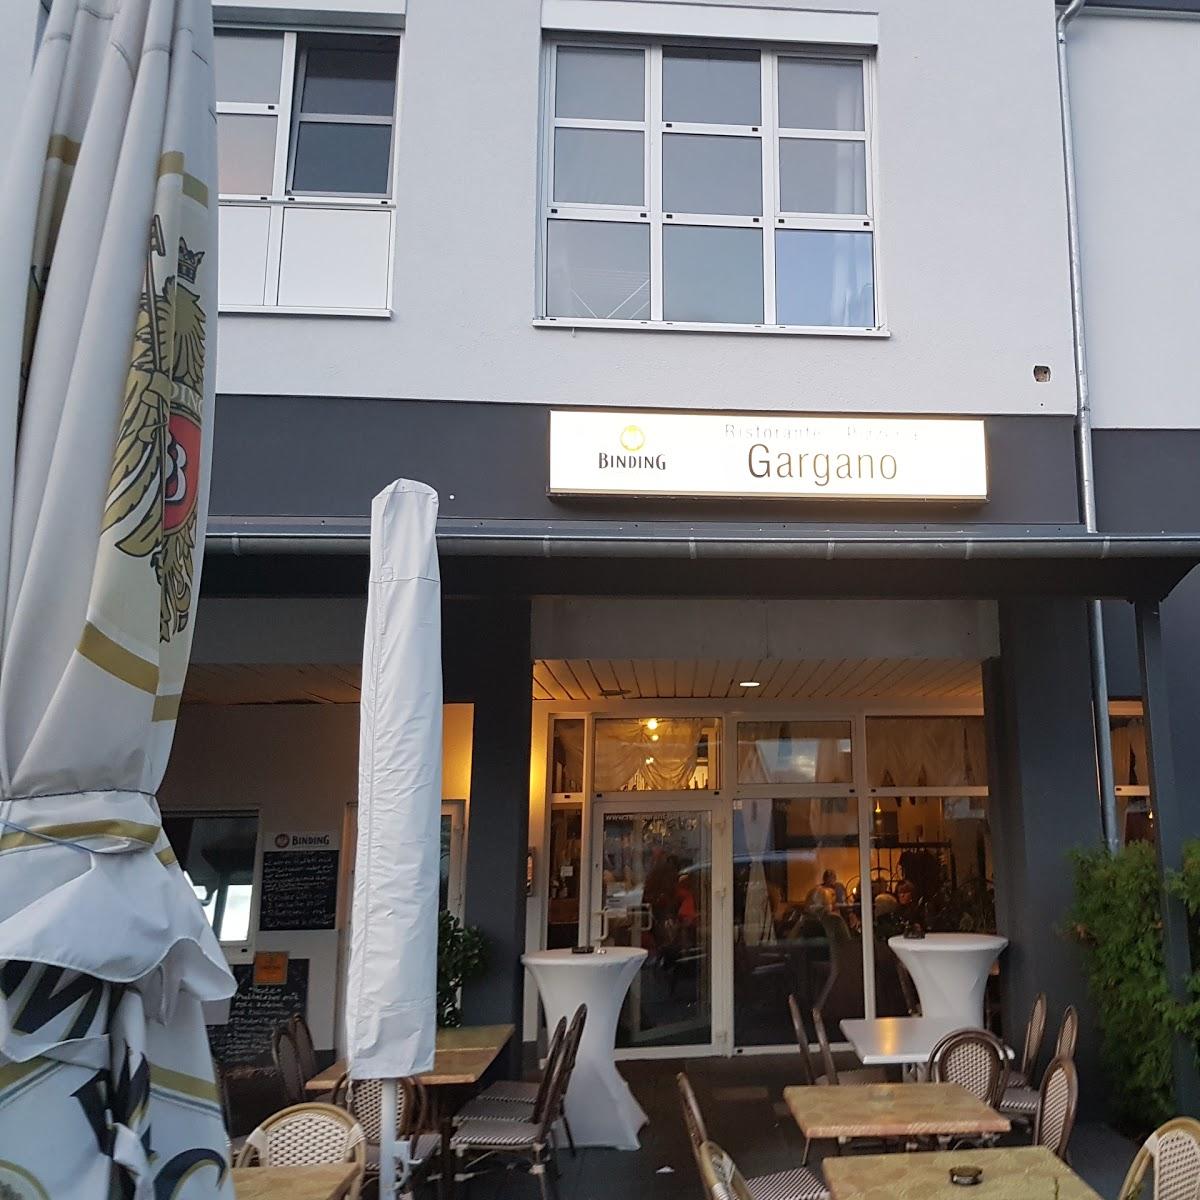 Restaurant "Ristorante Gargano" in Rödermark